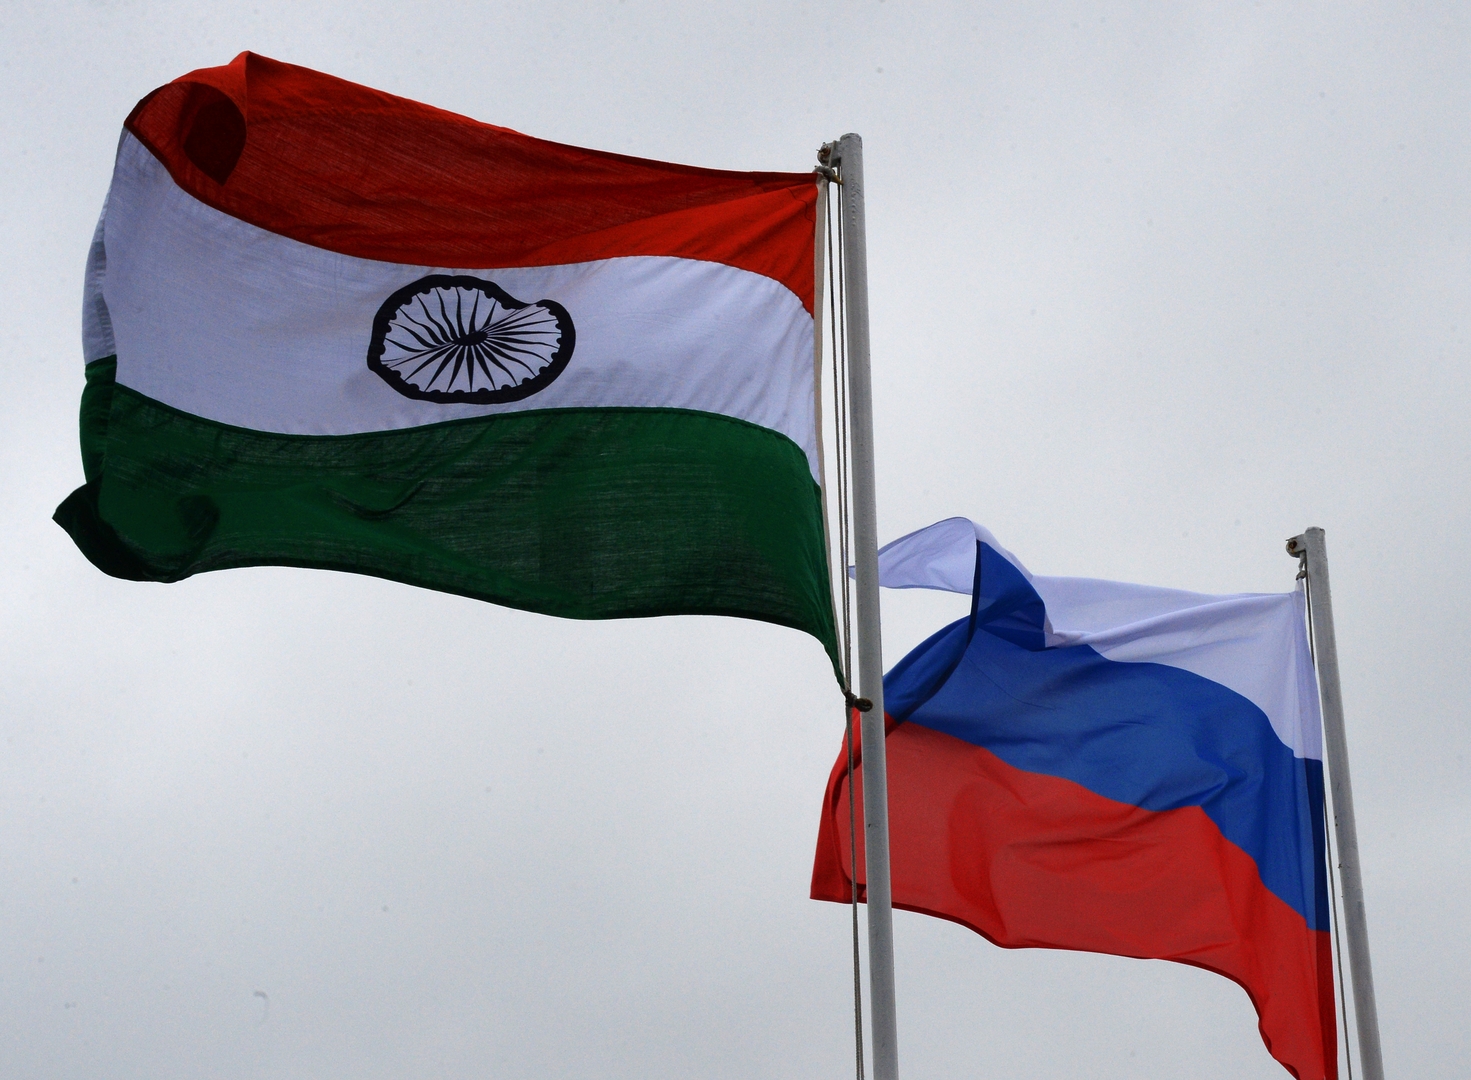 التبادل التجاري بين روسيا والهند يتجاوز الـ50 مليار دولار لأول مرة